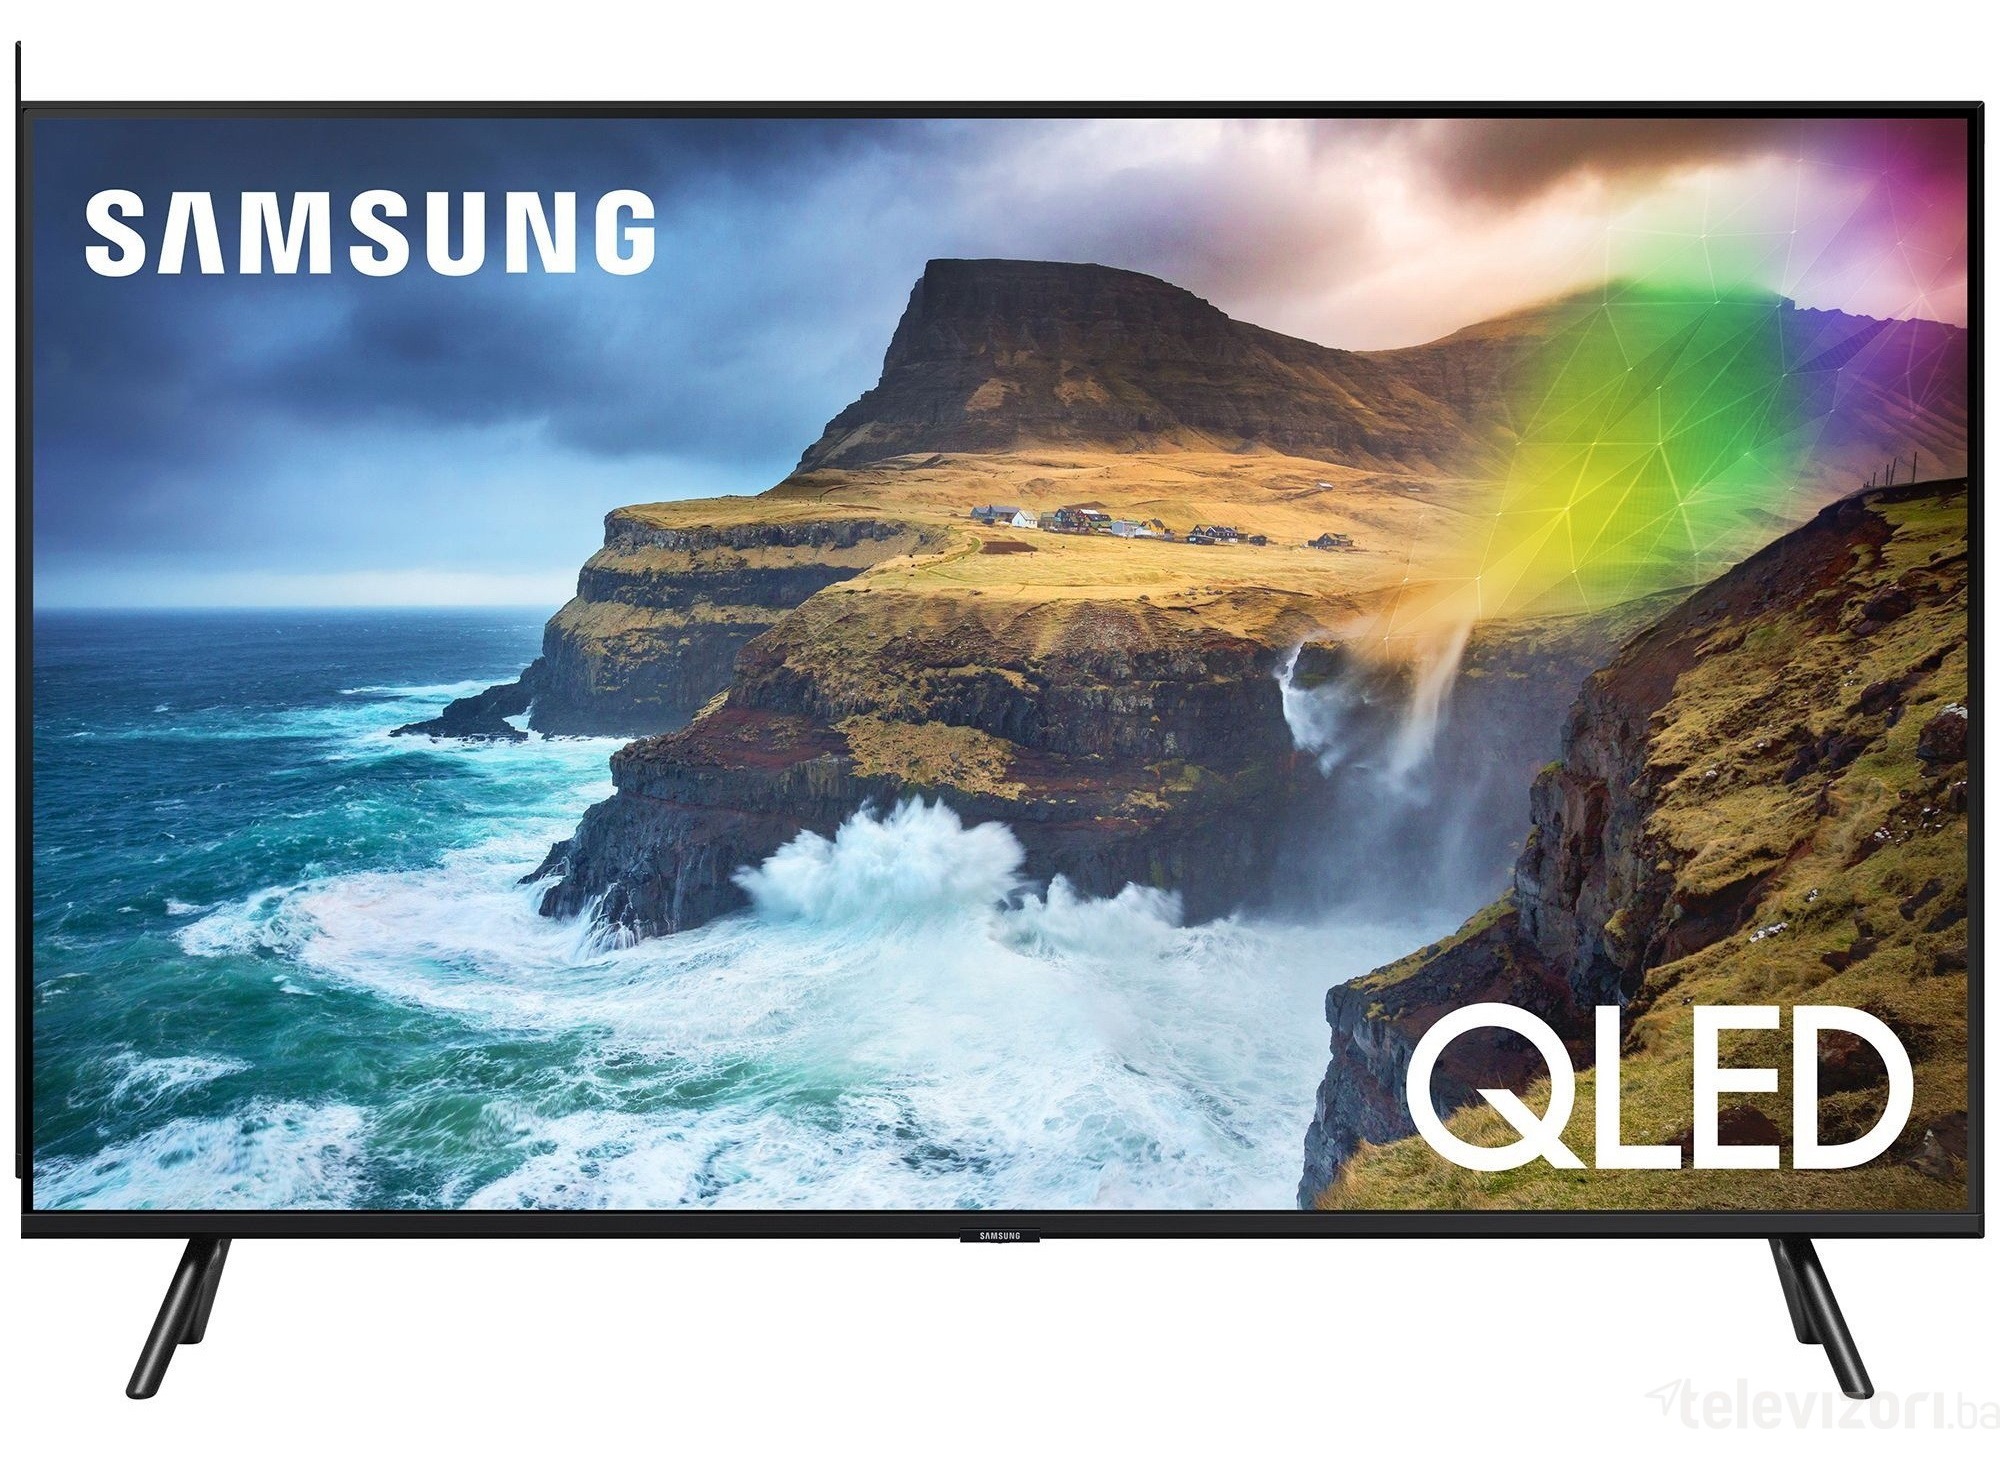 Samsung UHD_4K QLED TV 55Q70RAT 